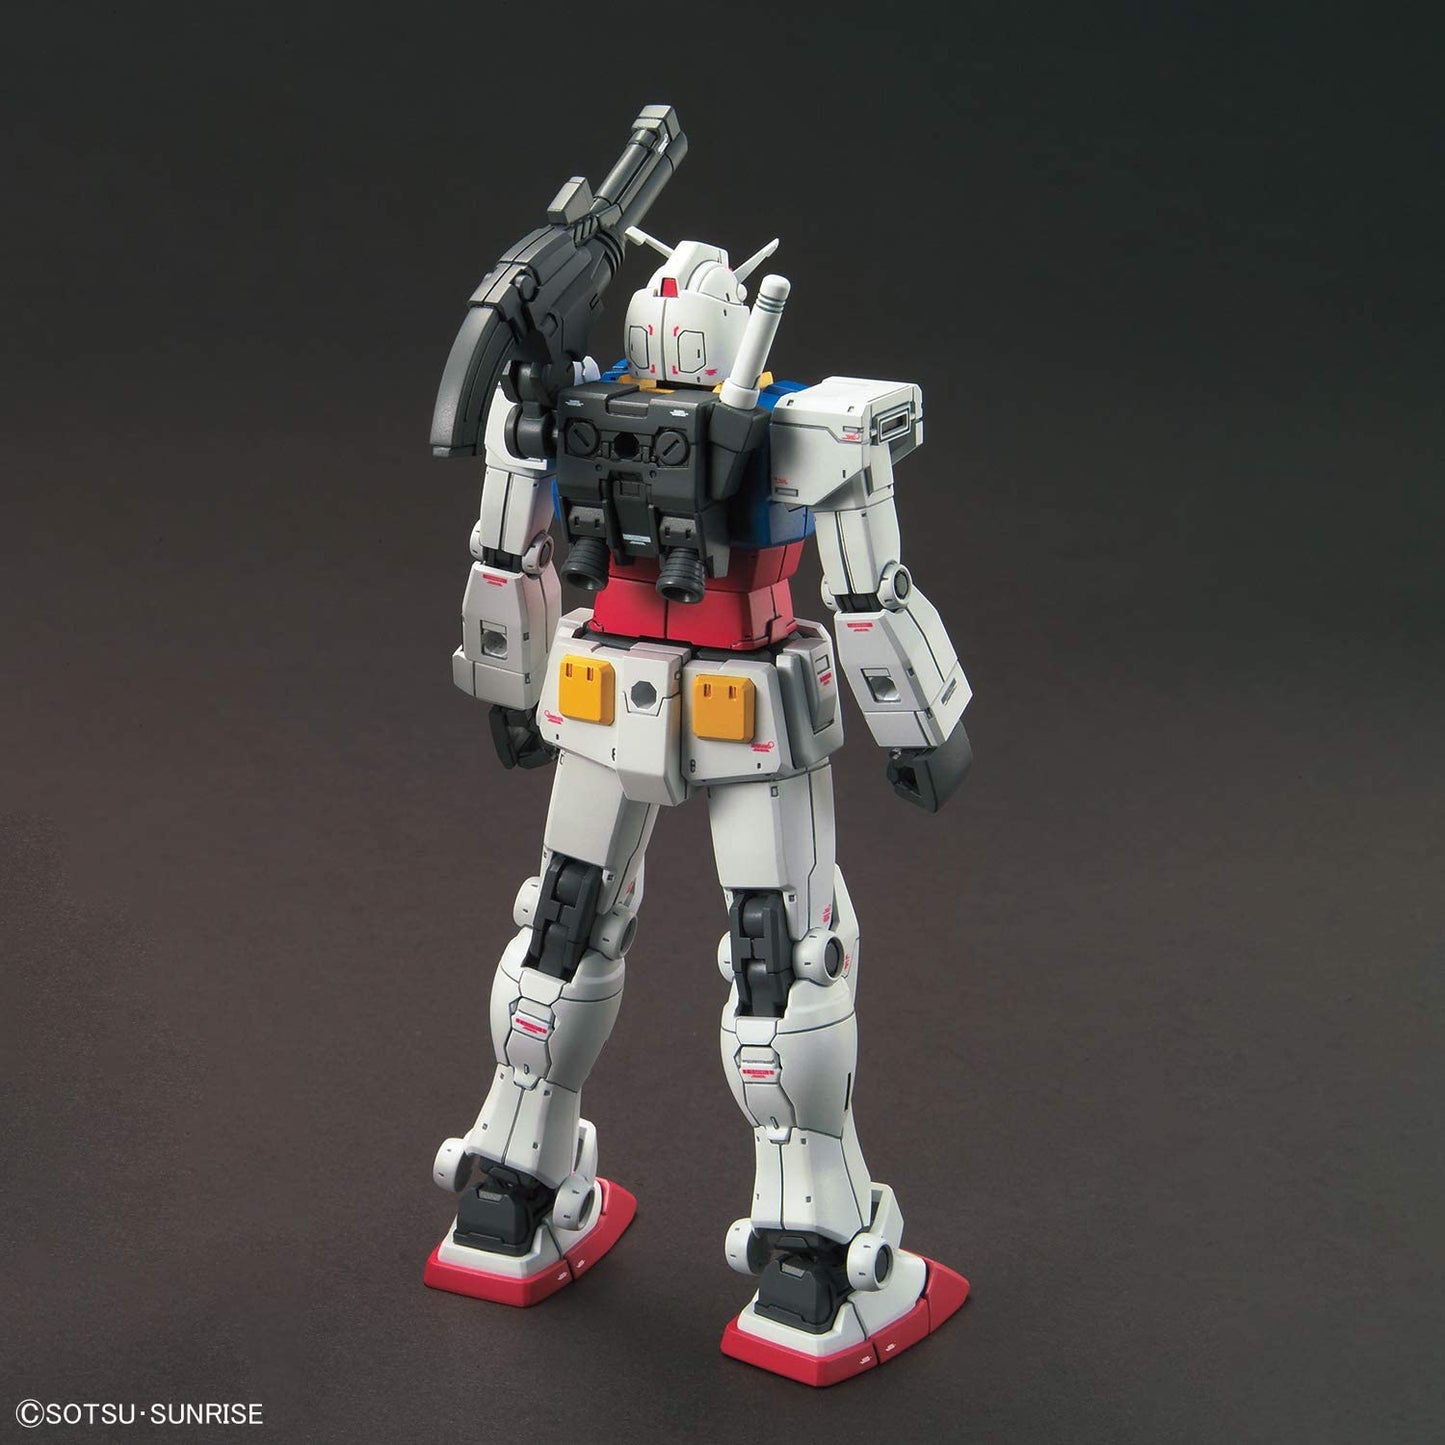 HG 1/144 RX-78-02 Gundam (GUNDAM THE ORIGIN ver.) Plastic Model "Mobile Suit Gundam: The Origin" | animota